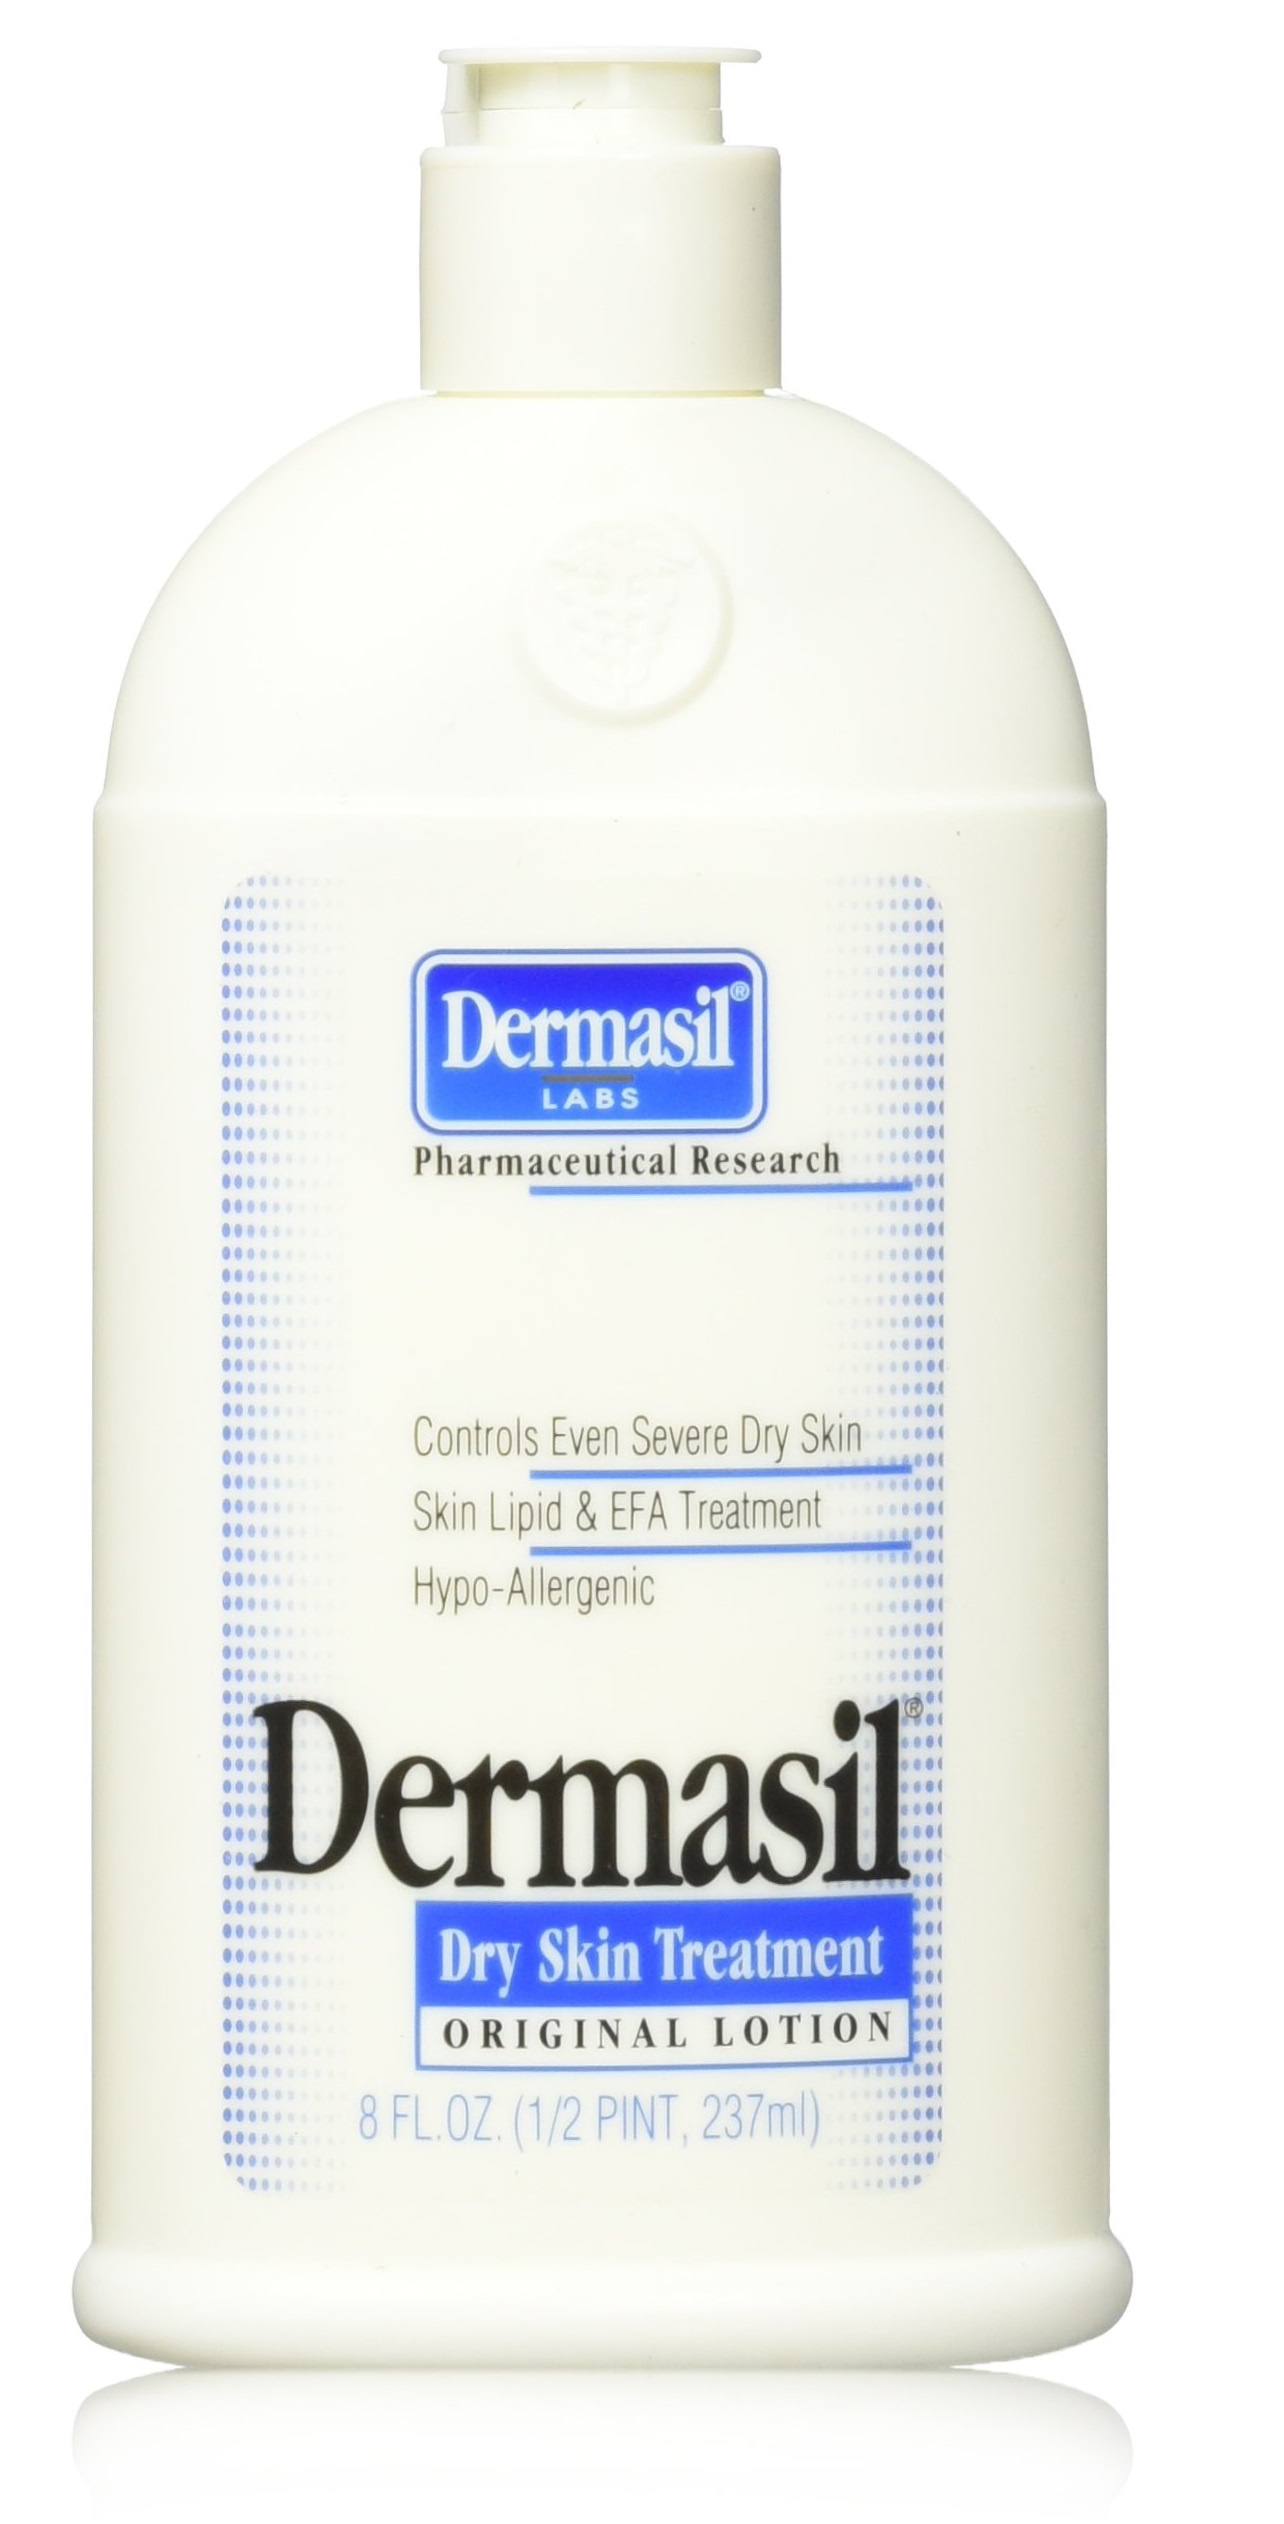 Dermasil Dry Skin Treatment - Original Lotion